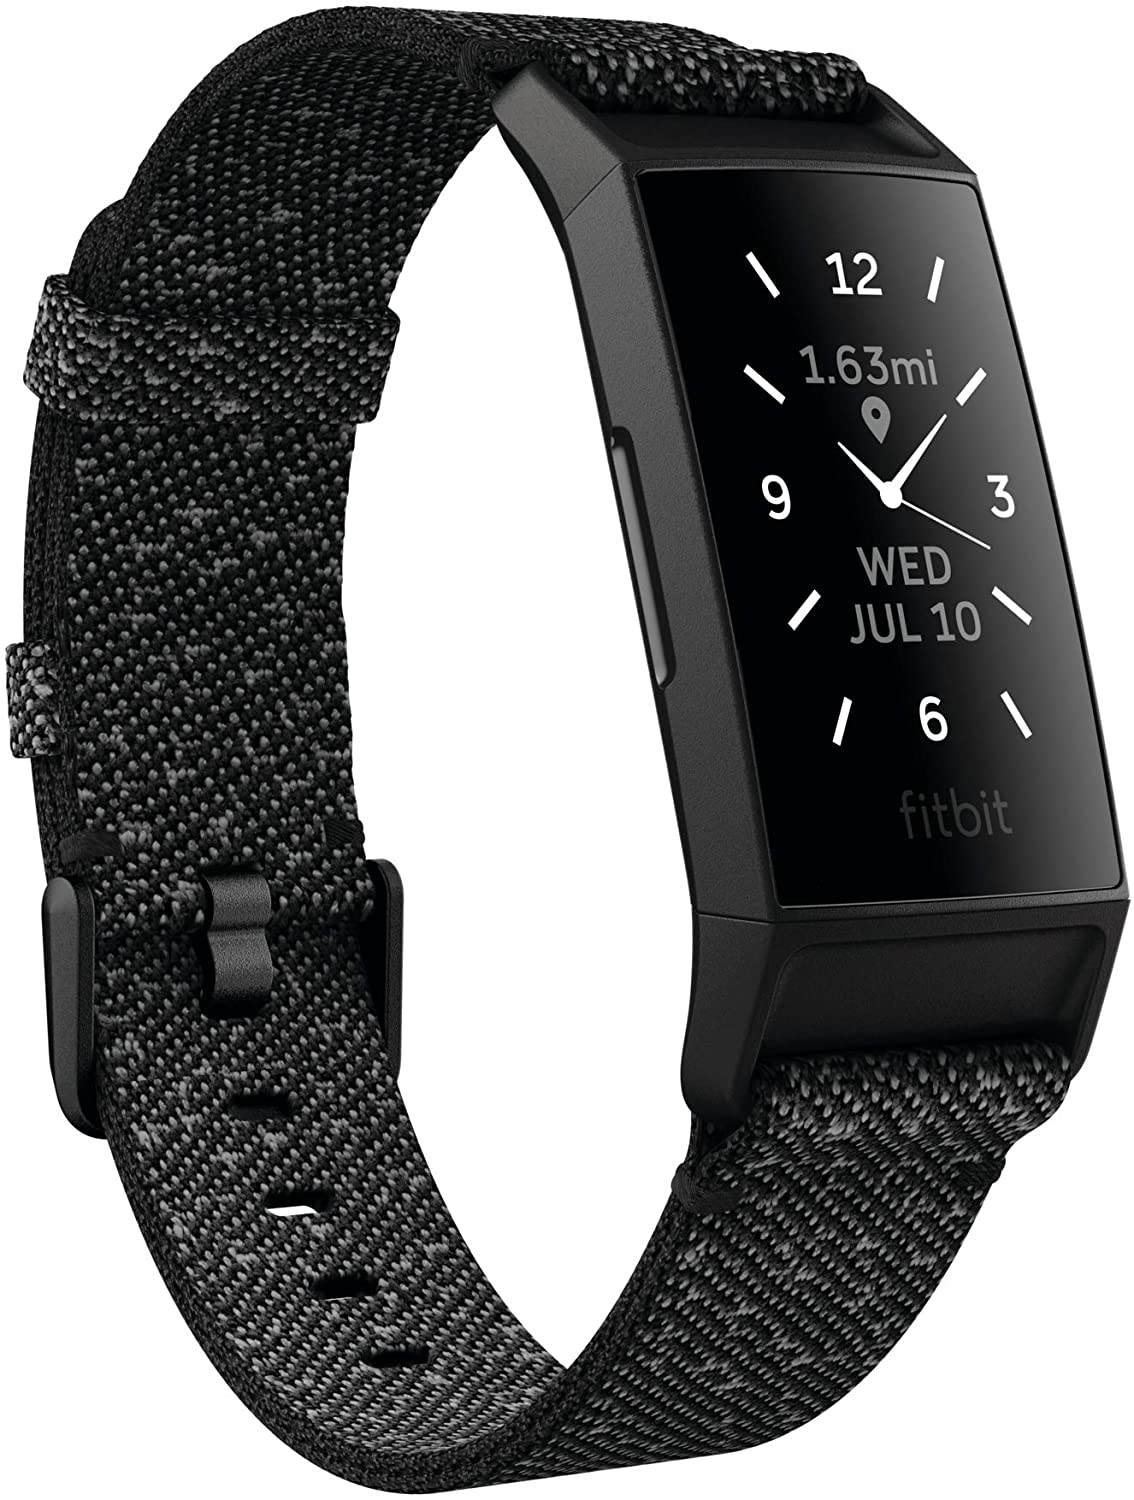 So sánh đồng hồ thông minh smarwatch với vòng đeo tay thông minh nên mua cái nào